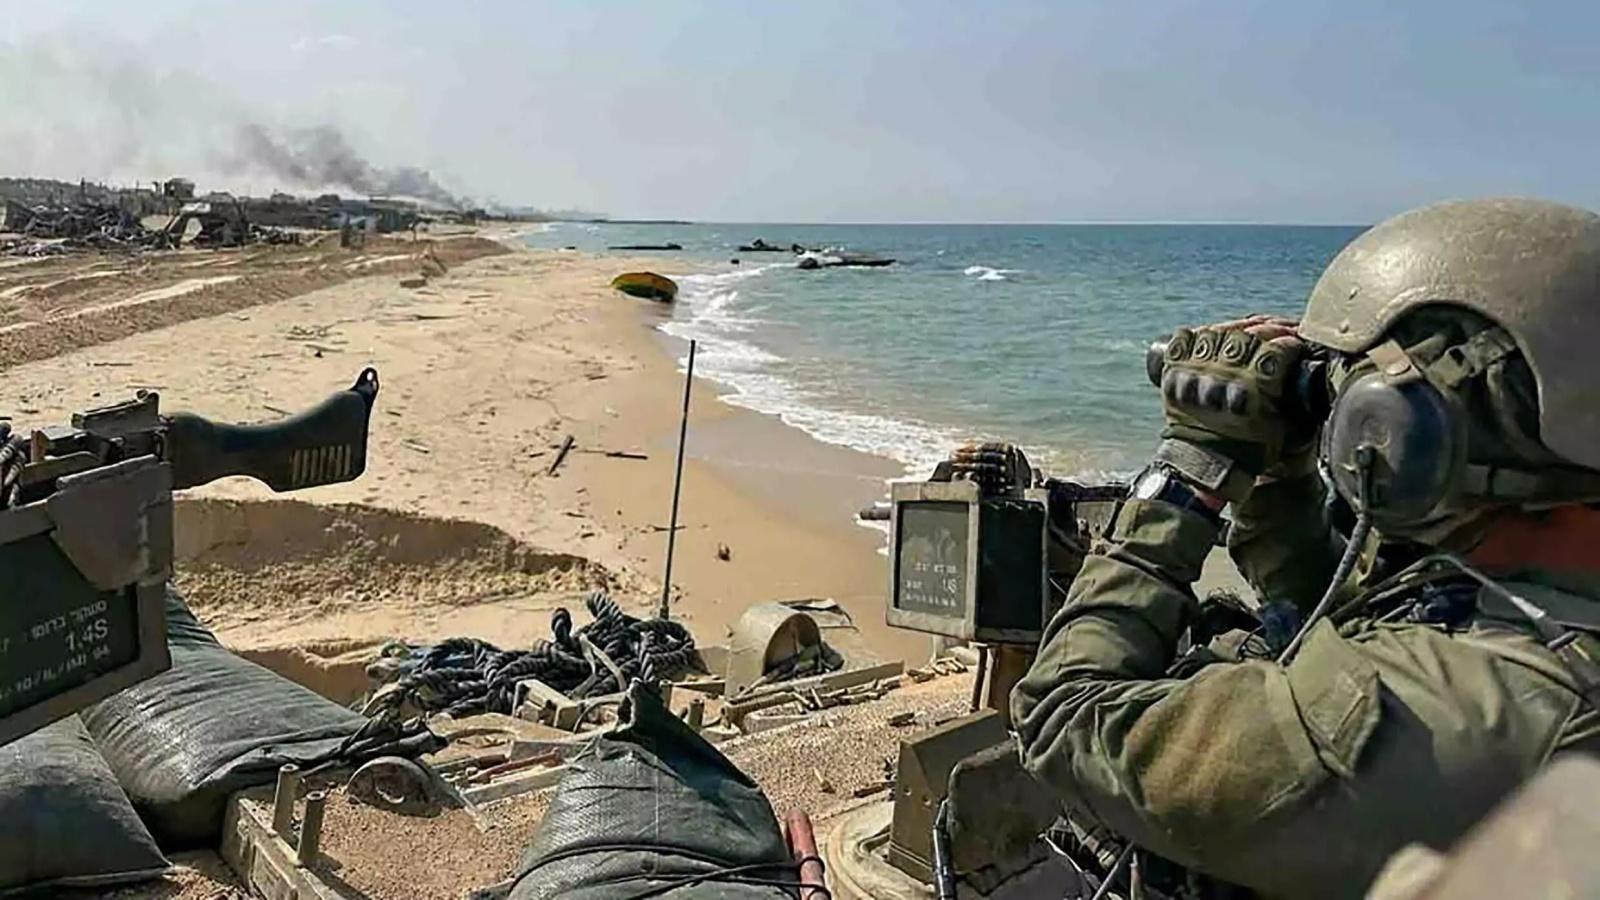 صورة وفرها الجيش الإسرائيلي في الخامس من تشرين الثانيل/نوفمبر 2023 تظهر قوات إسرائيلية تقوم بدورية على شاطئ قطاع غزة 